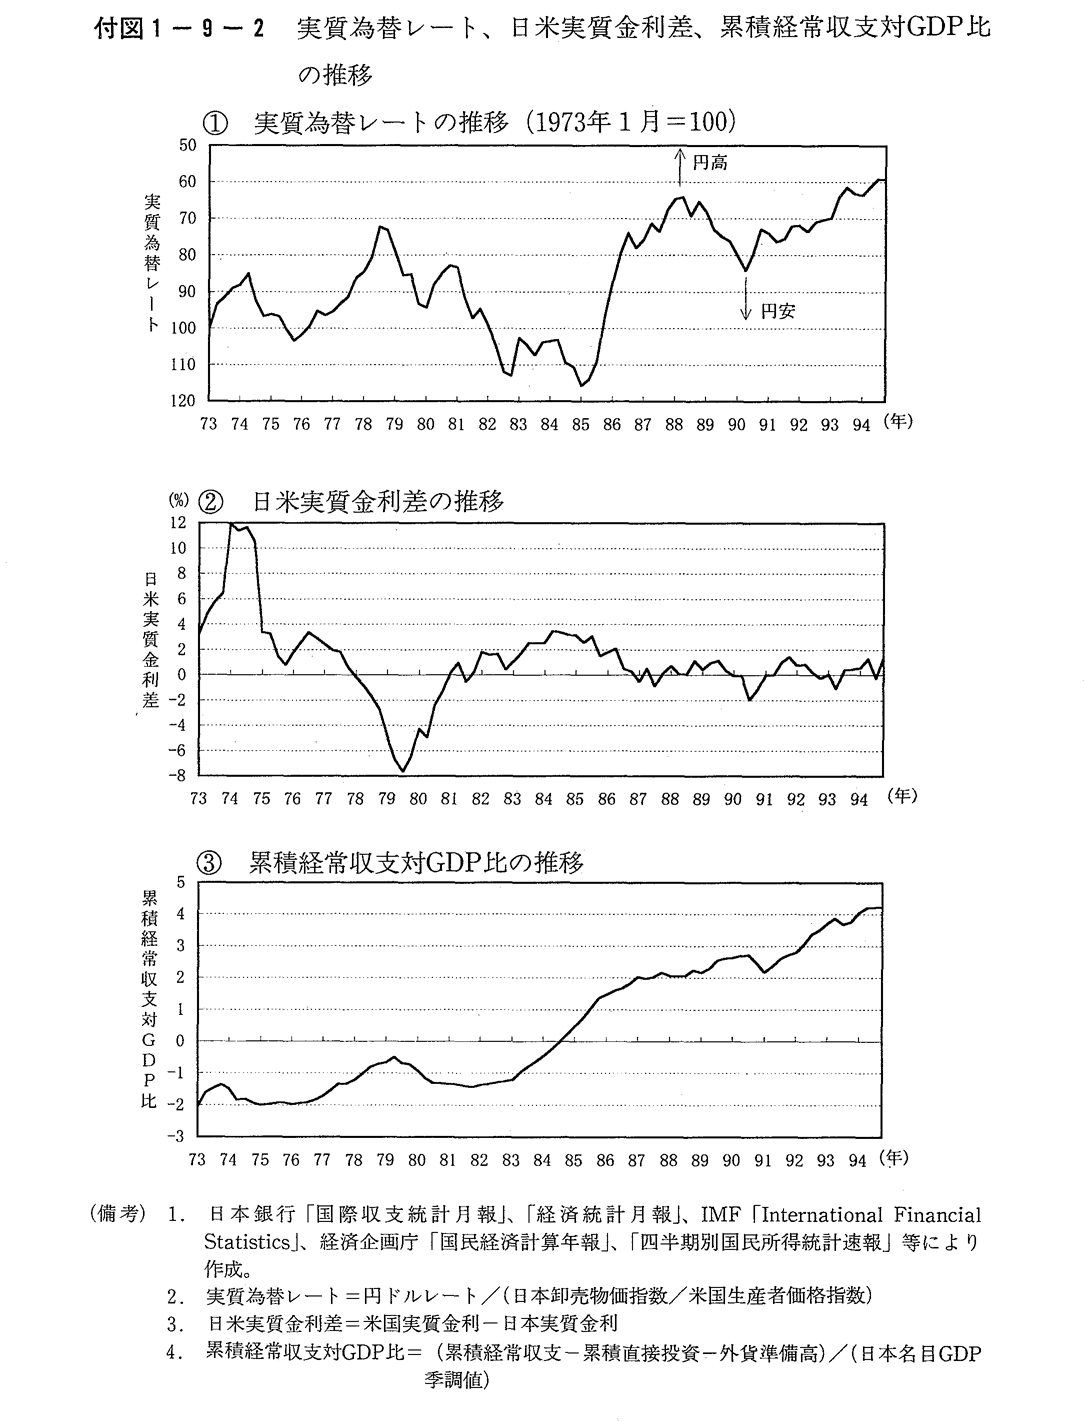 付図1-9-2　実質為替レート日米実質金利差累積経常収支対GDP比の推移